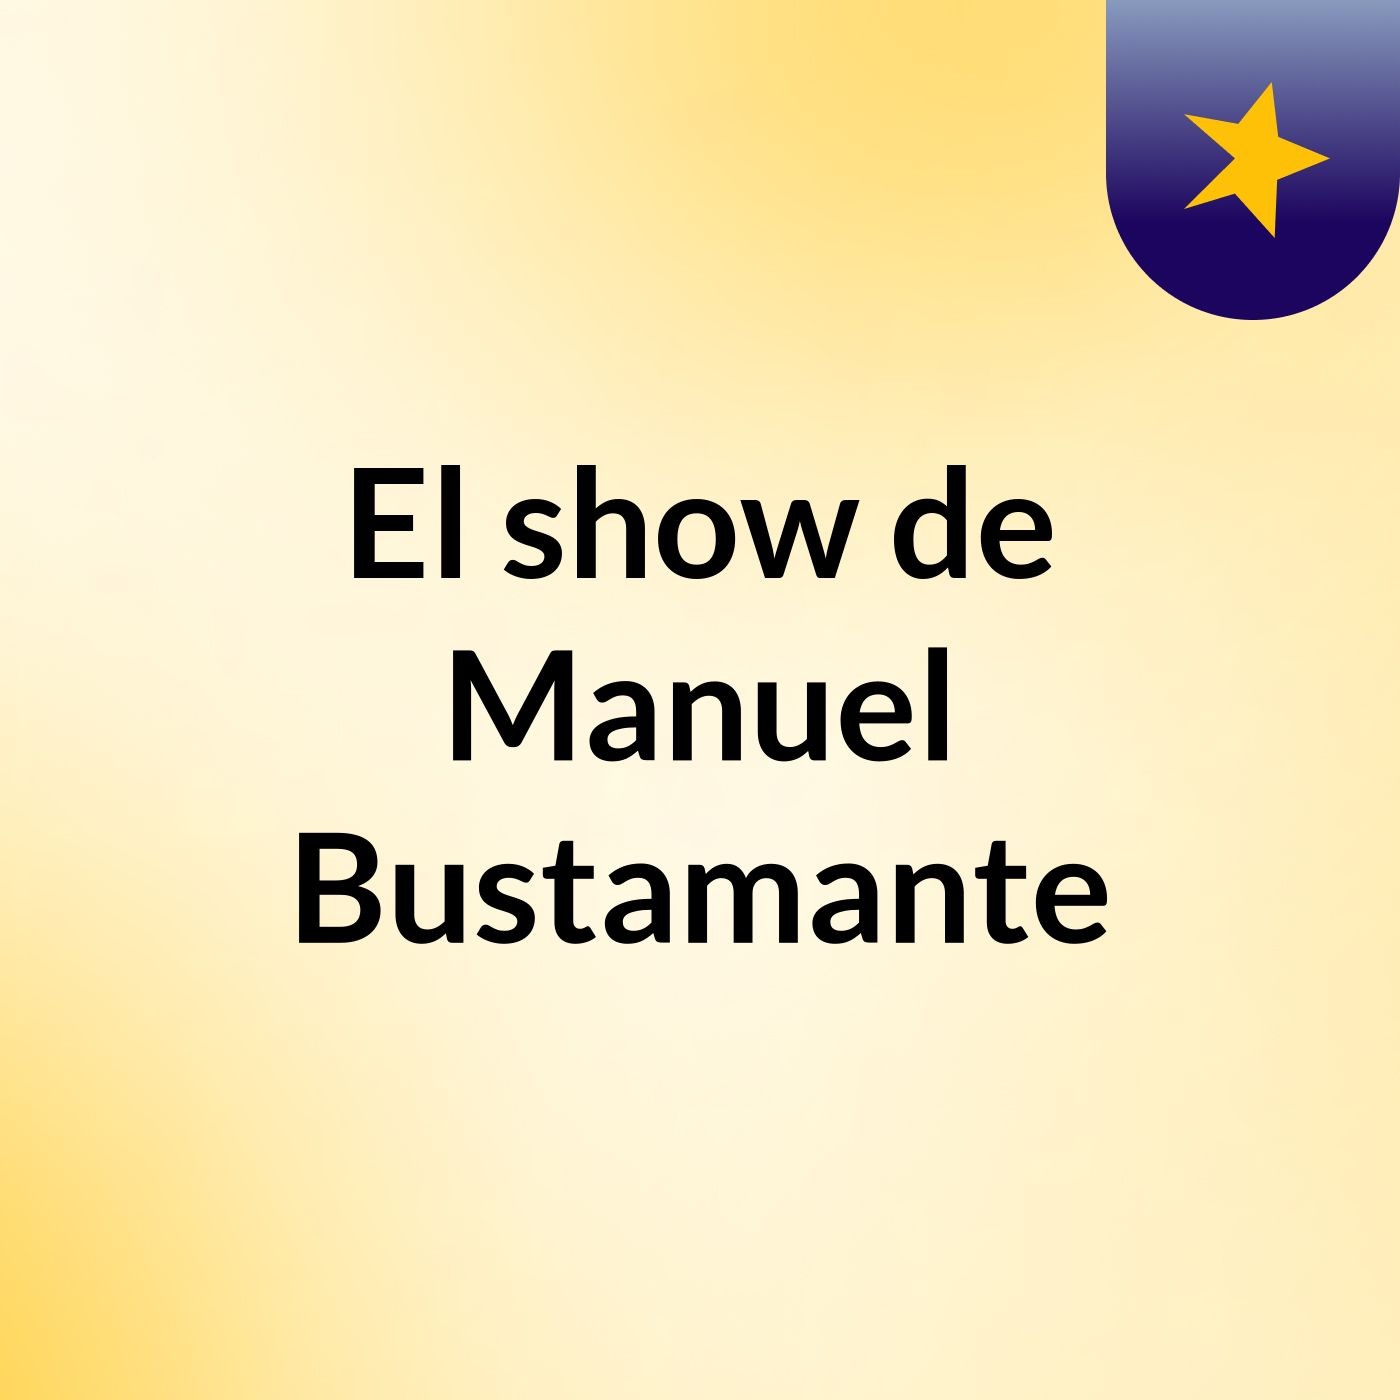 El show de Manuel Bustamante